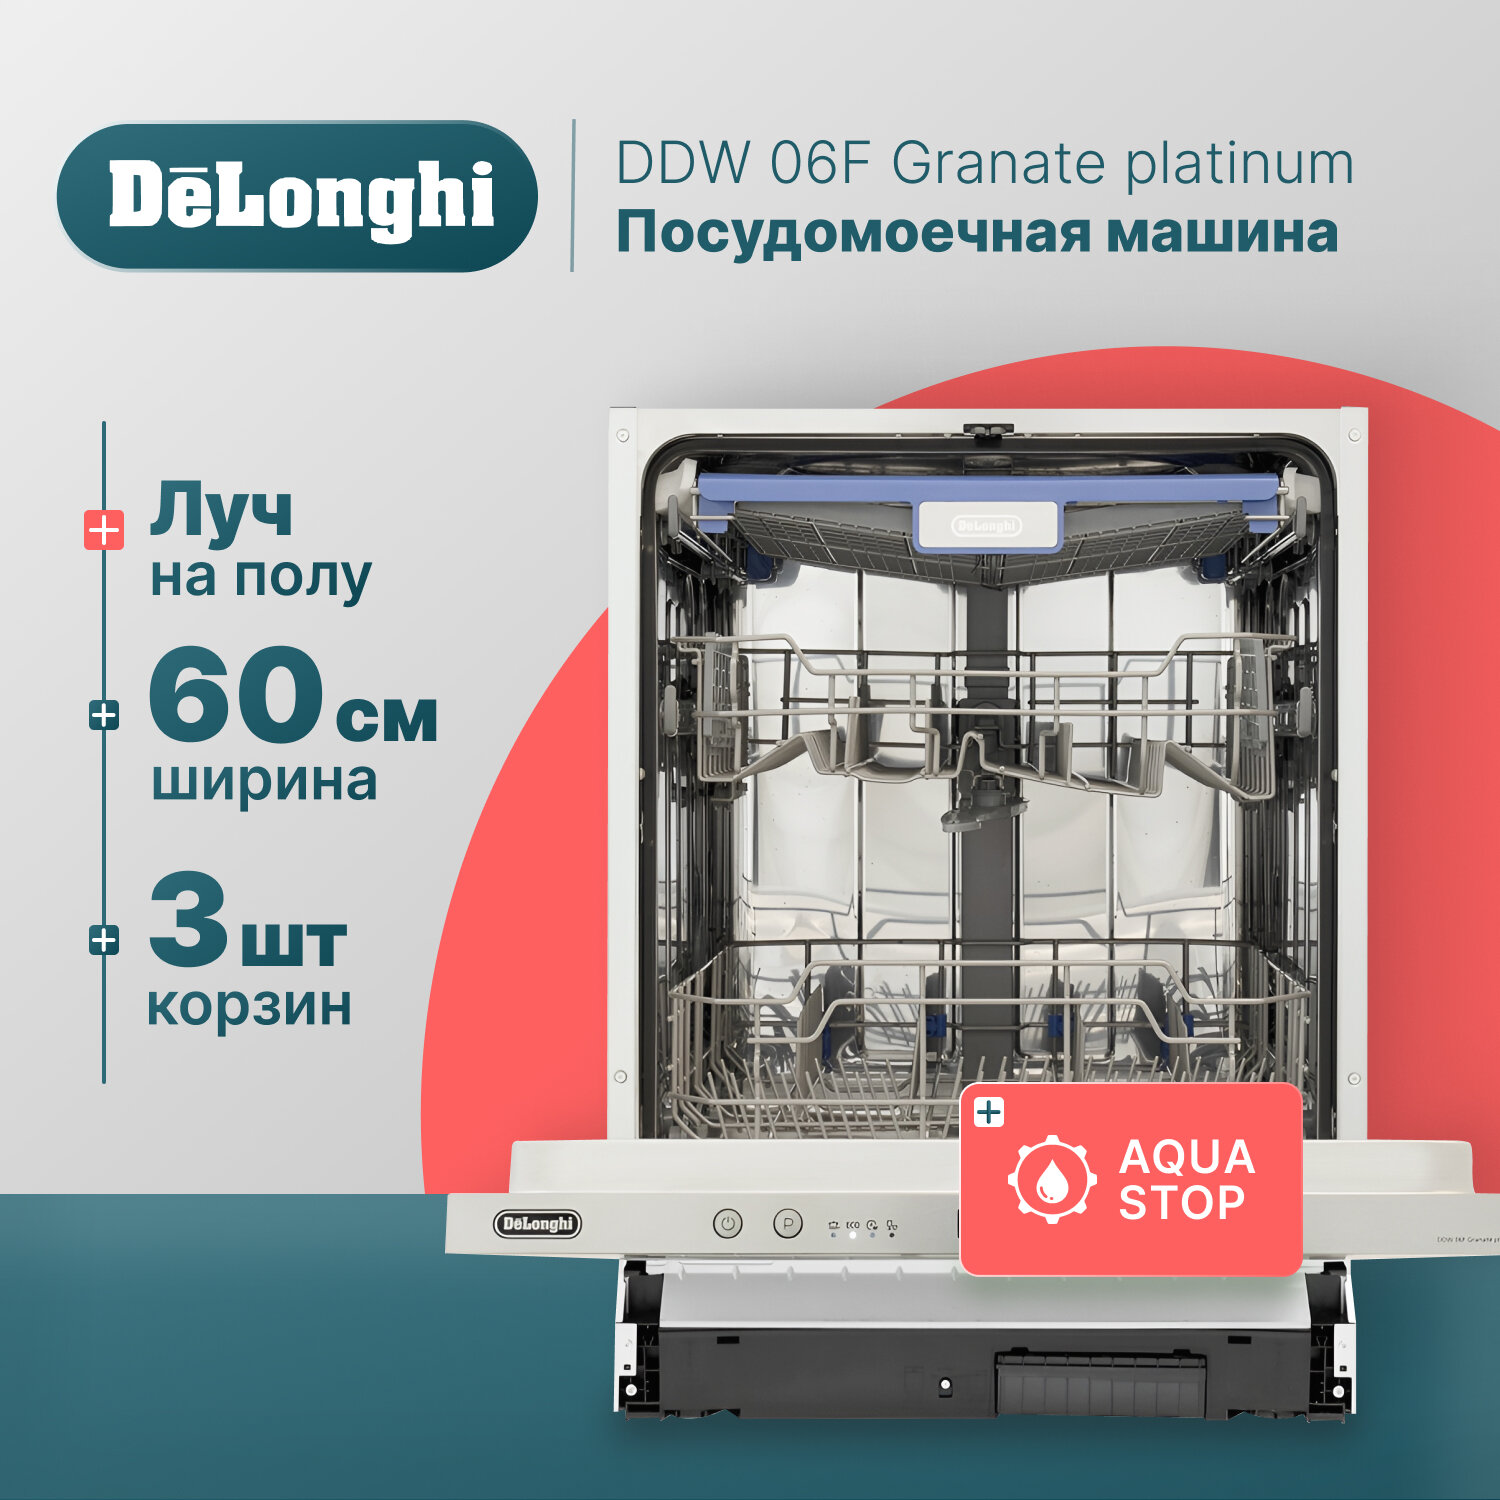 Встраиваемая посудомоечная машина De'Longhi DDW06F Granate platinum DeLonghi - фото №15